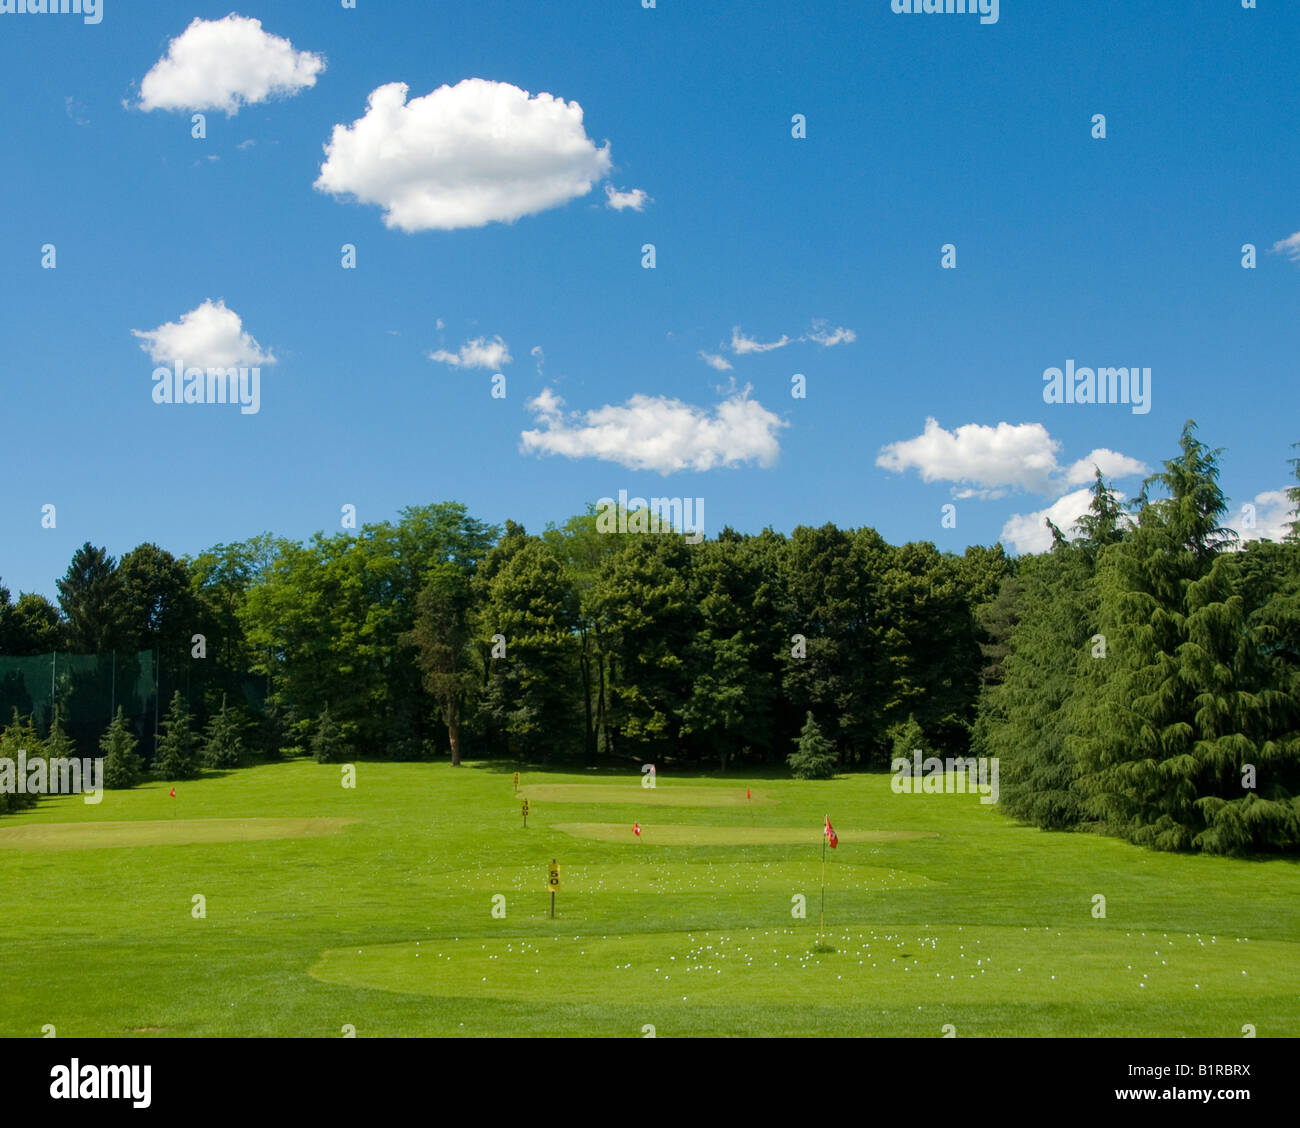 Golf practice range Stock Photo